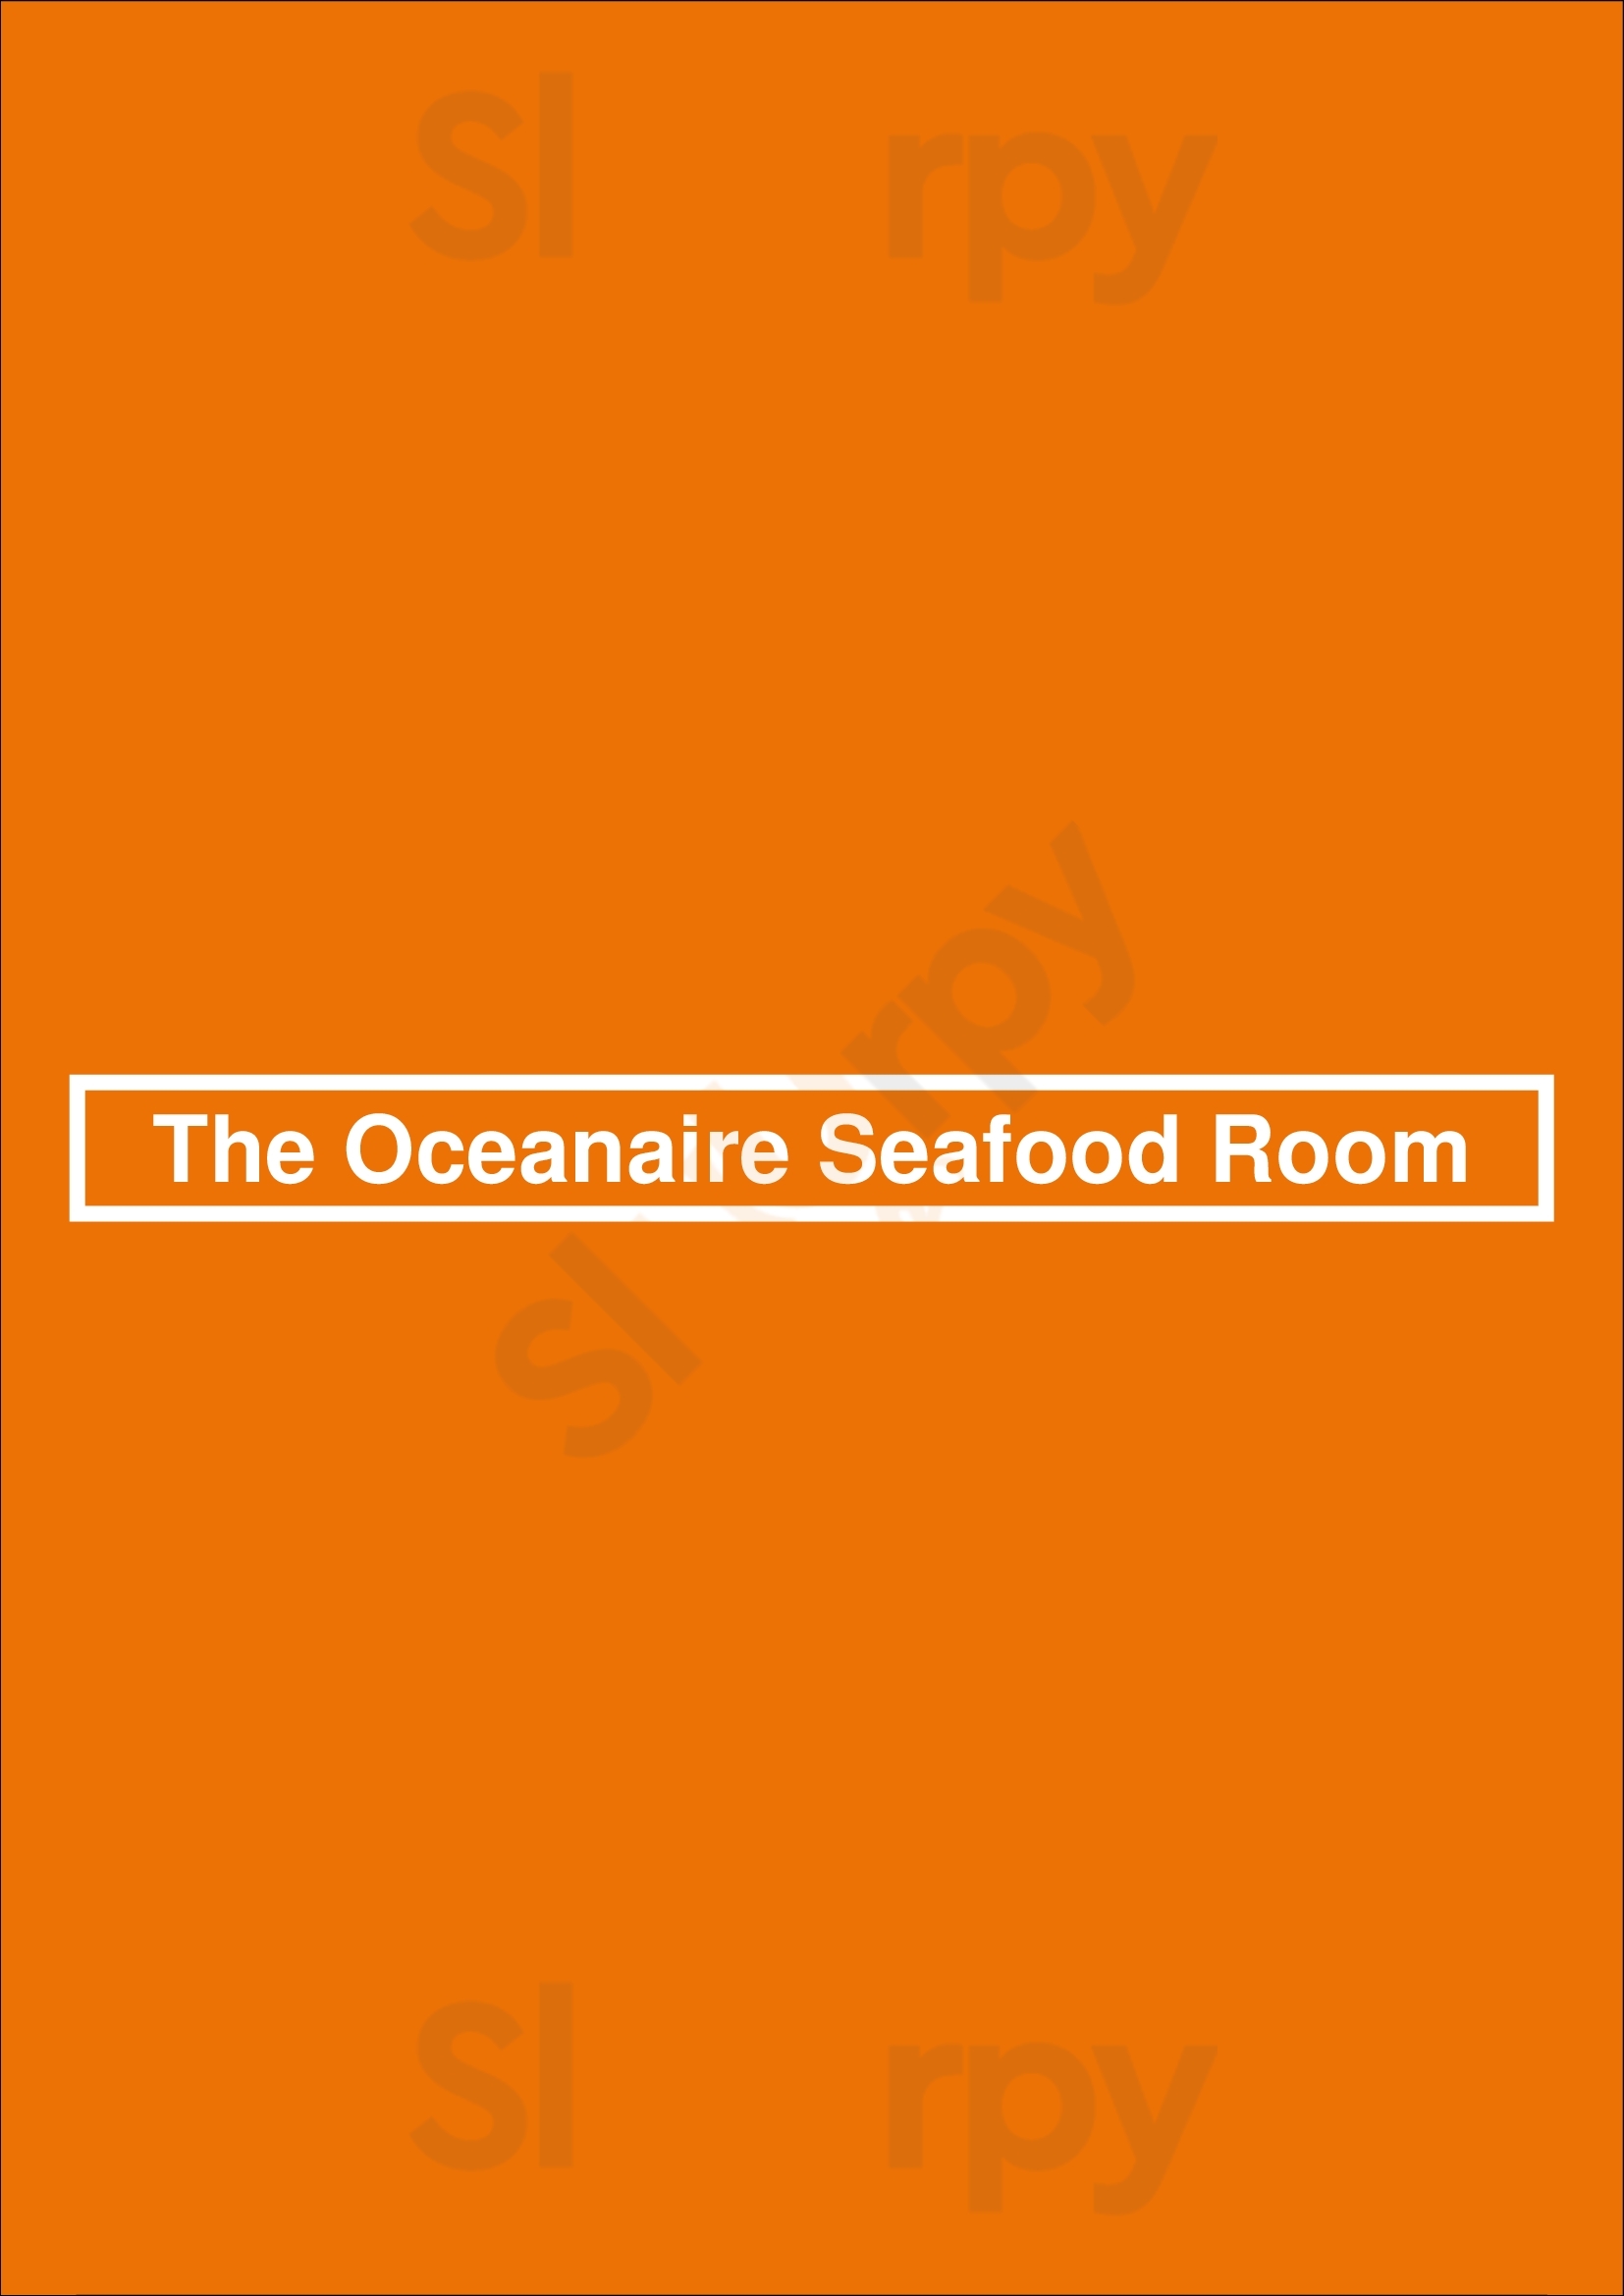 The Oceanaire Seafood Room Minneapolis Menu - 1